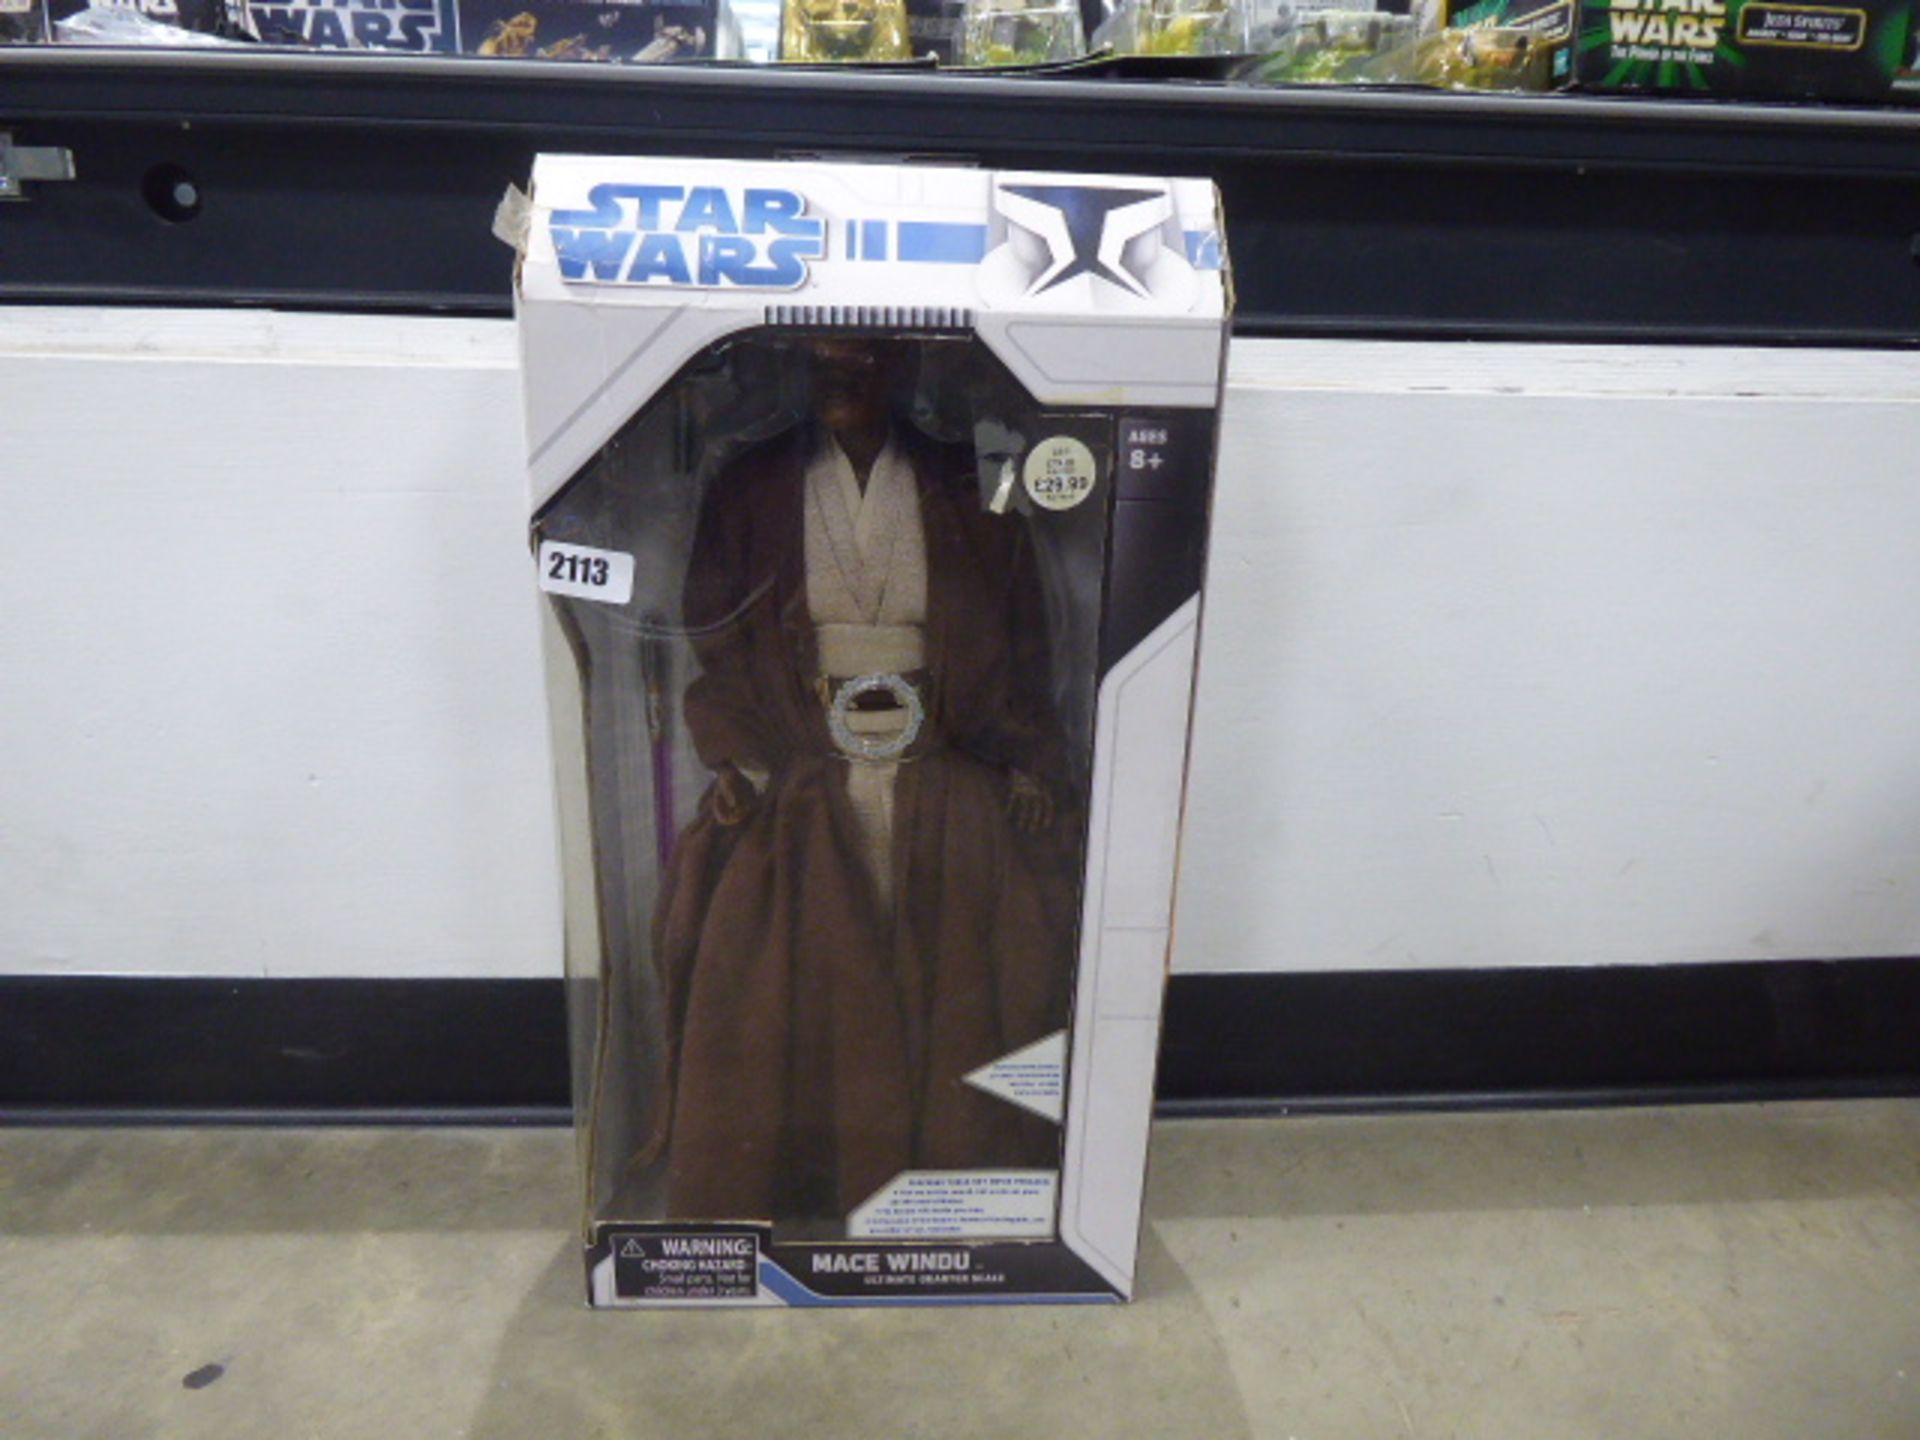 Quarter scale figure of Star Wars Mace Windu in box